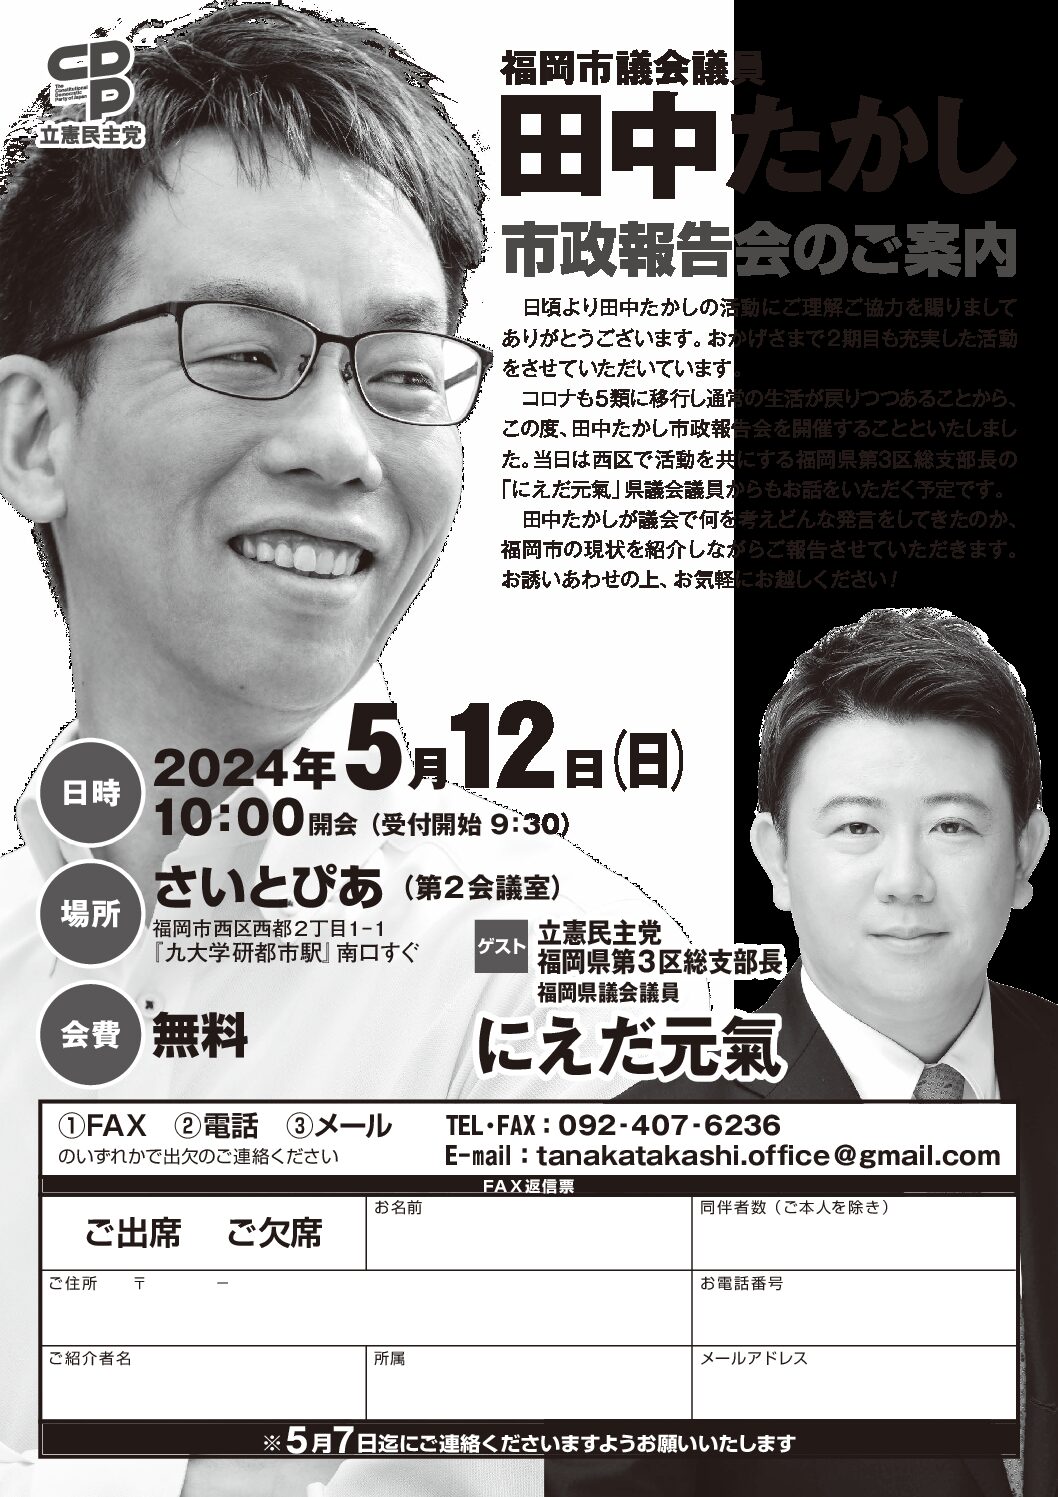 立憲民主党 田中たかしオフィシャルホームページ | 福岡市議会議員